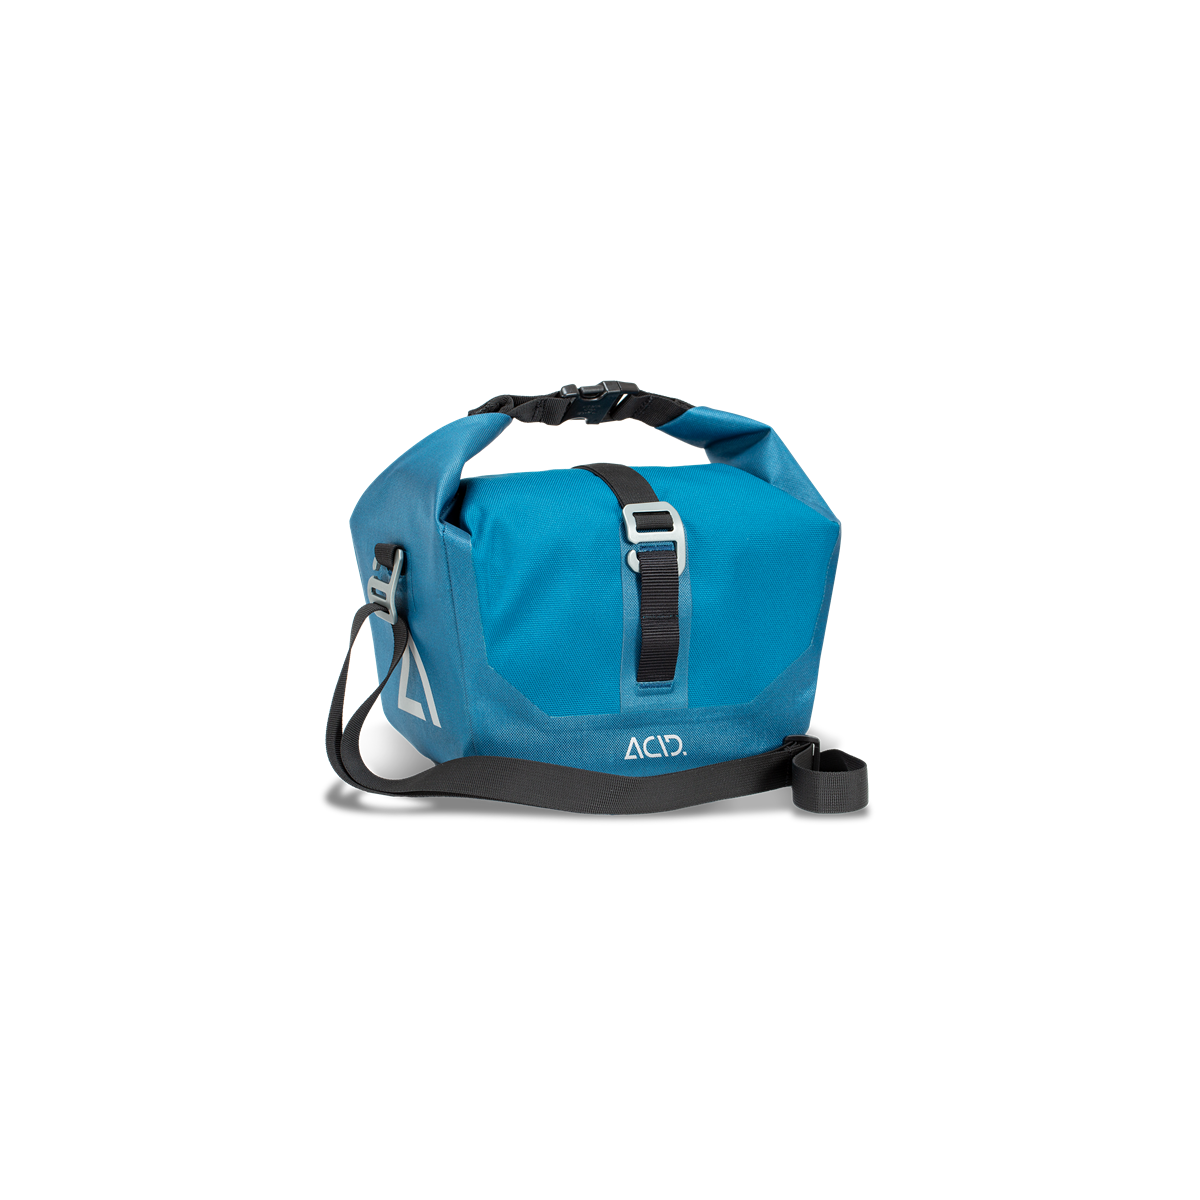 Kühl Tasche für Fahrrad Lenker mit integriertem Kühlfach Farbe Blau 